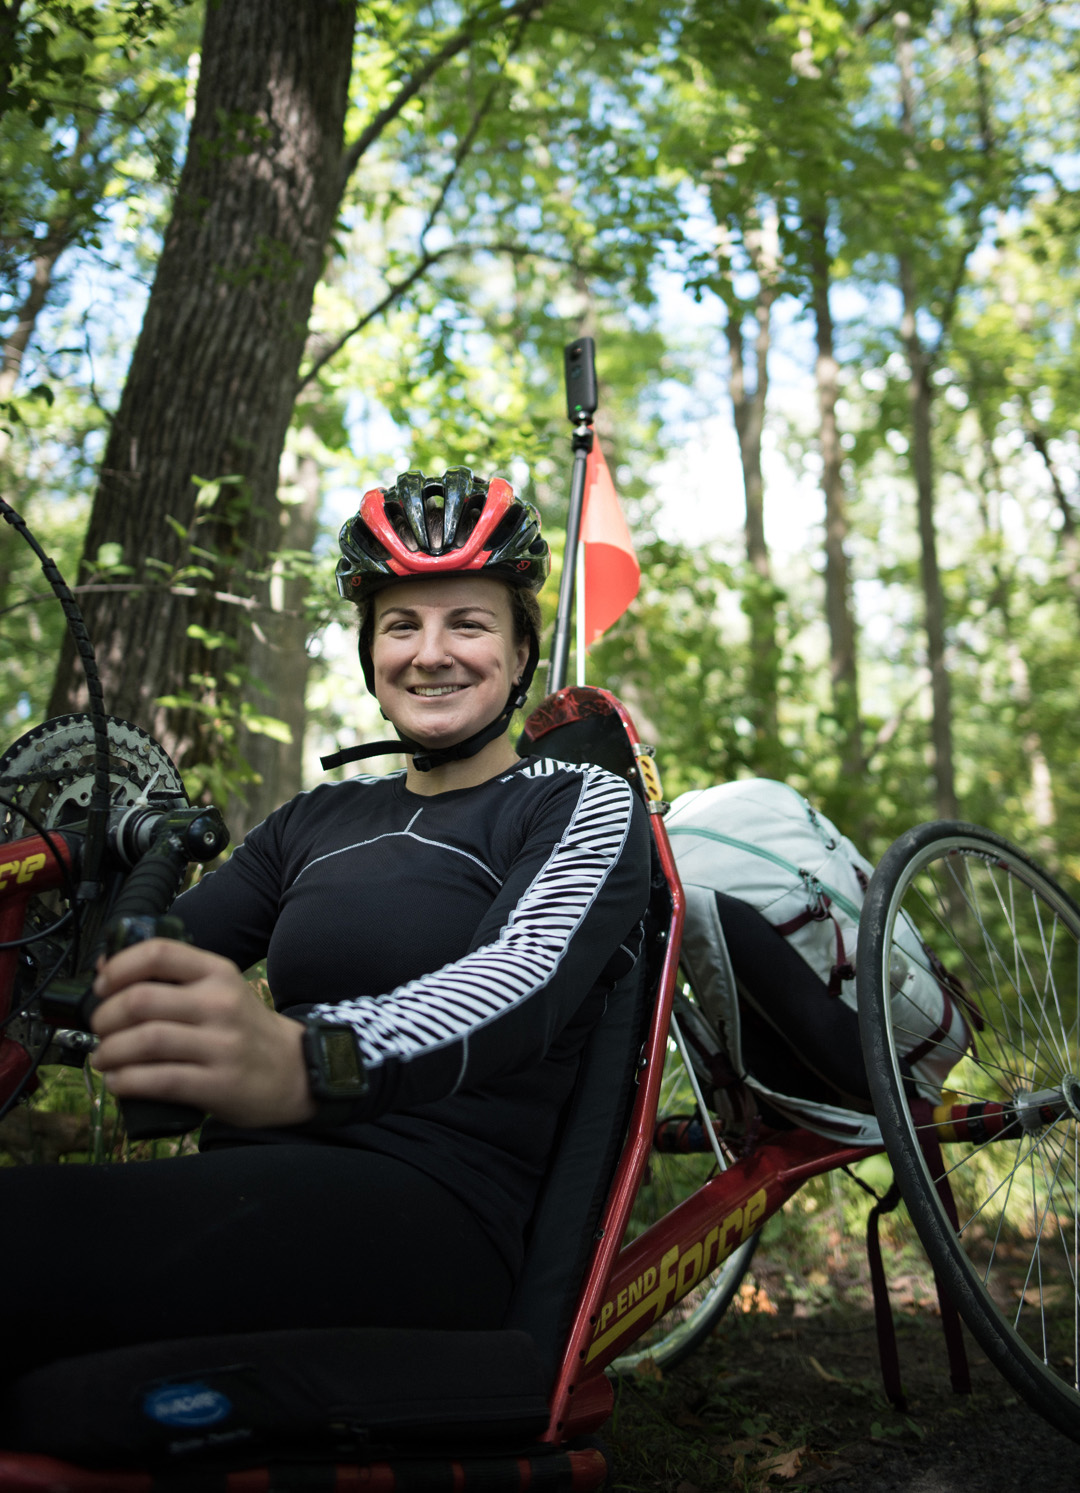 camille sourit alors qu'elle est assise sur son vélo à main dans une zone boisée. 